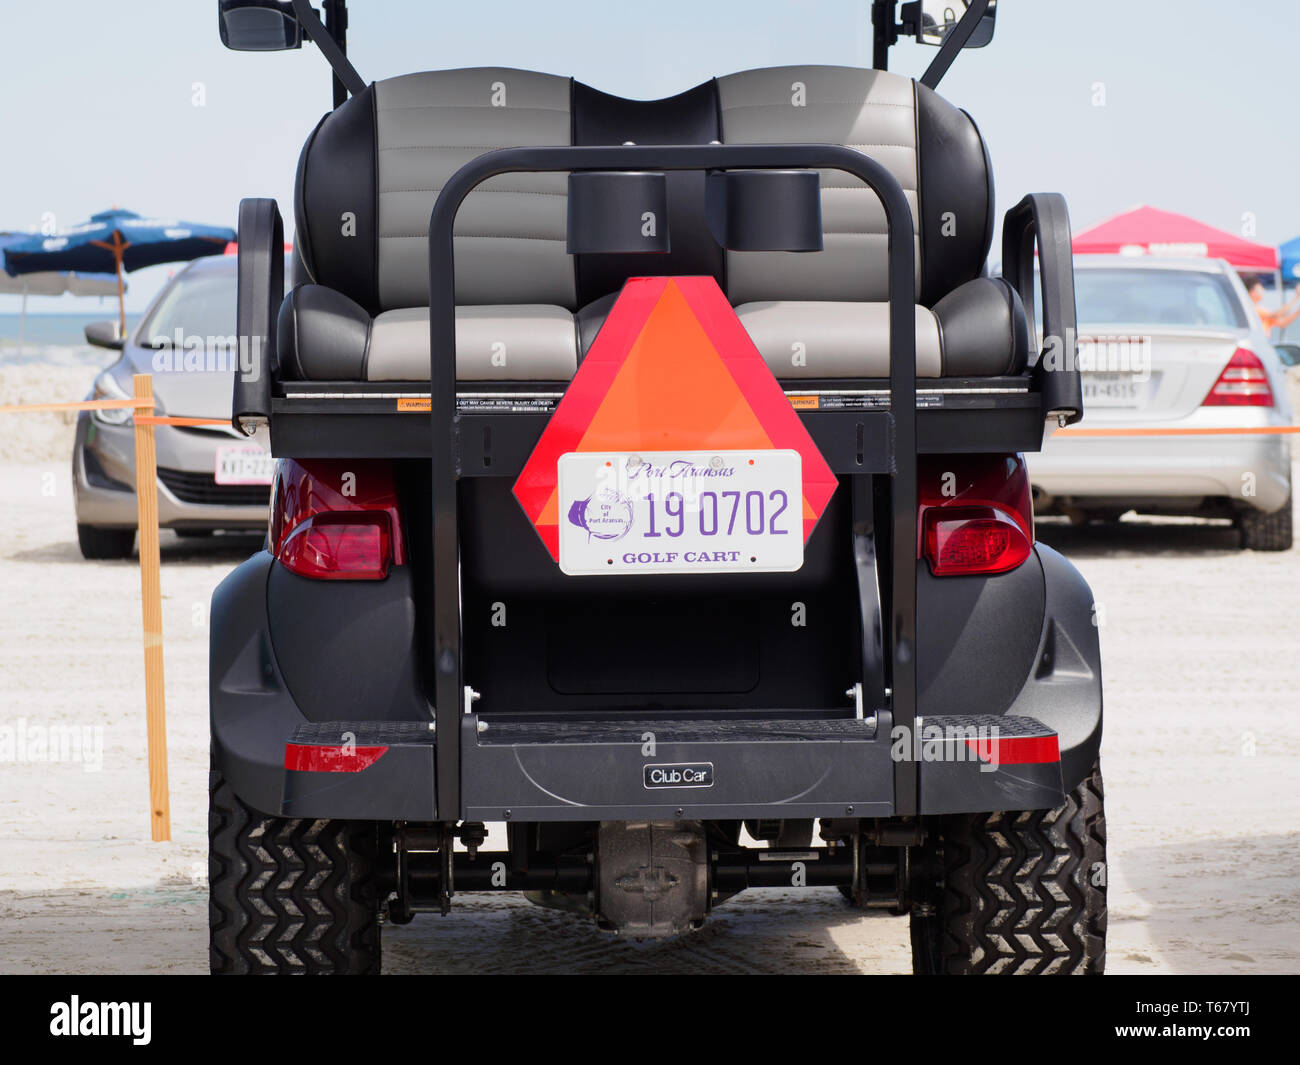 Ein Golf Cart mit Port Aransas Nummernschild sitzt in einem Strand Parkplatz am2019 Texas Sandfest in Port Aransas, Texas USA. Stockfoto